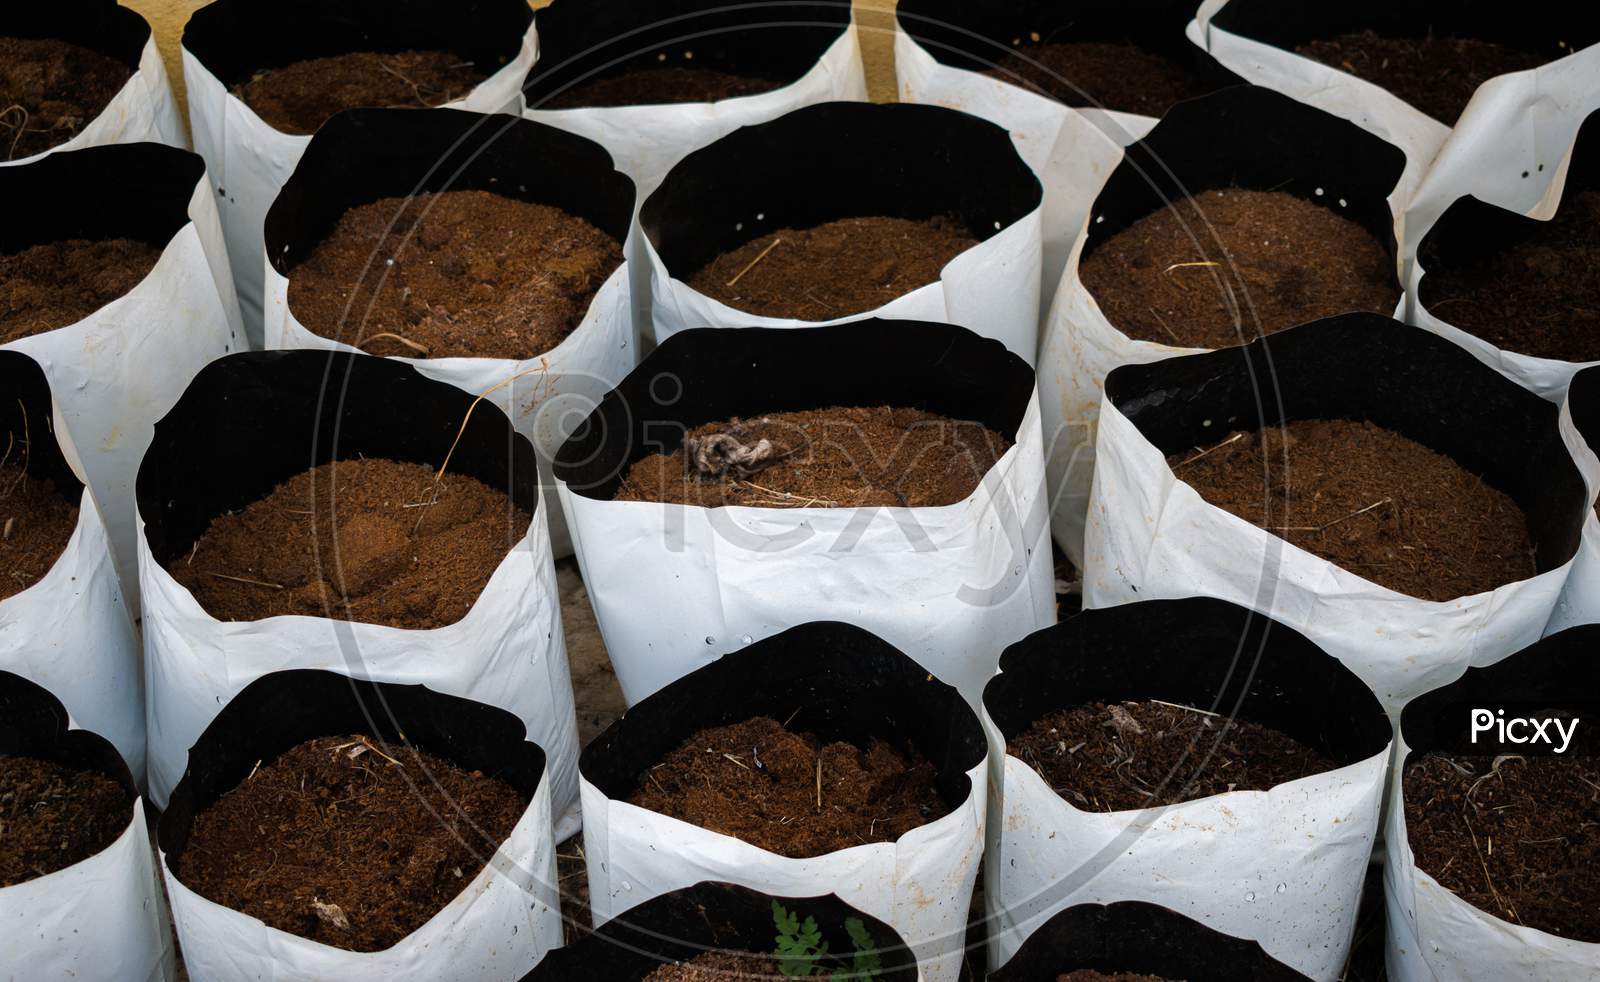 Soil Bags For Gardening Containing Fertile Soil